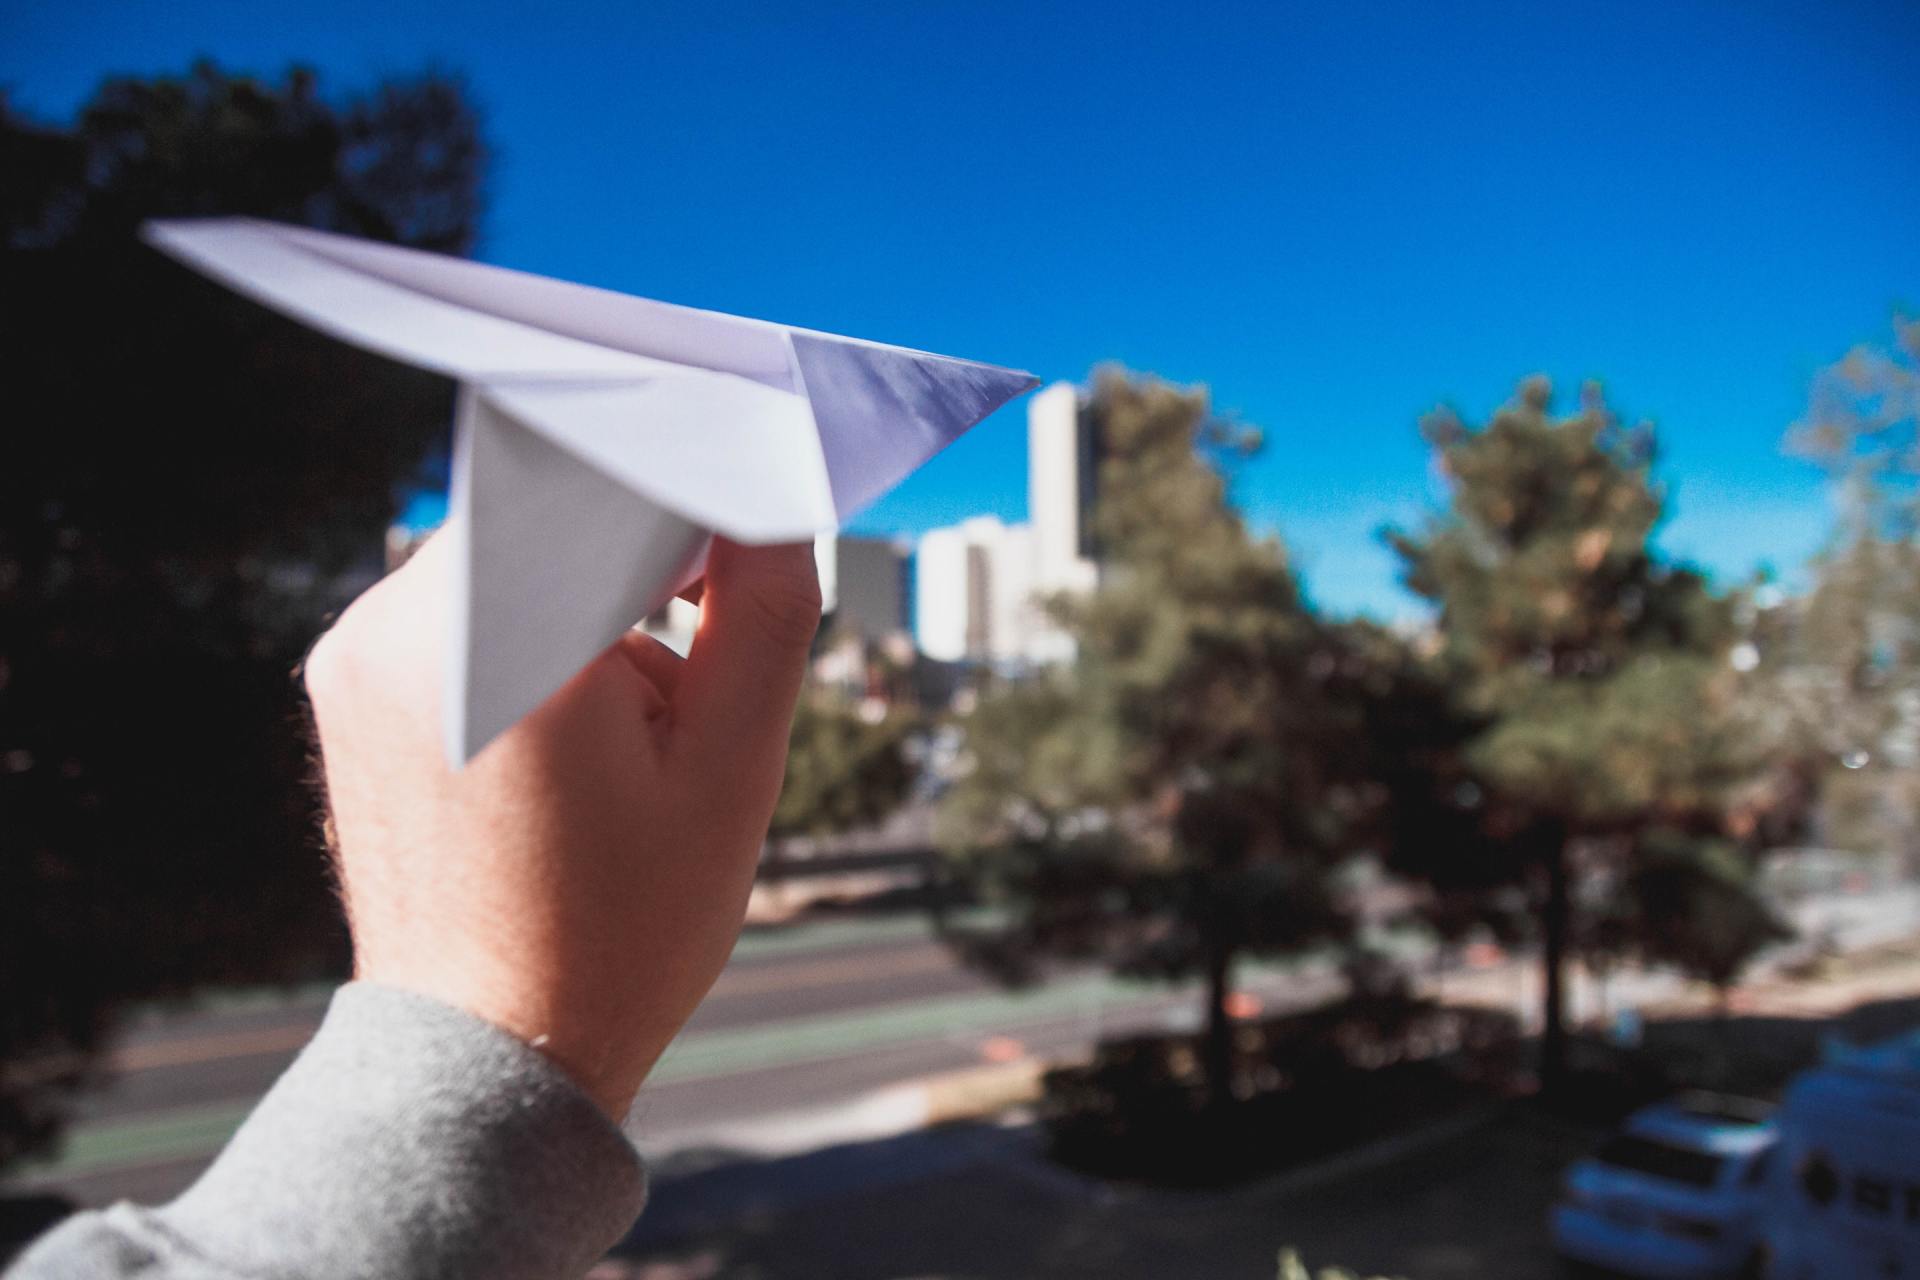 Mão segurando um avião de papel na direção de uma rua parcialmente vazia. É possível ver árvores no meio e nas laterais da rua e o céu está azul e sem nuvens. Dois carros aparecem no canto da foto.